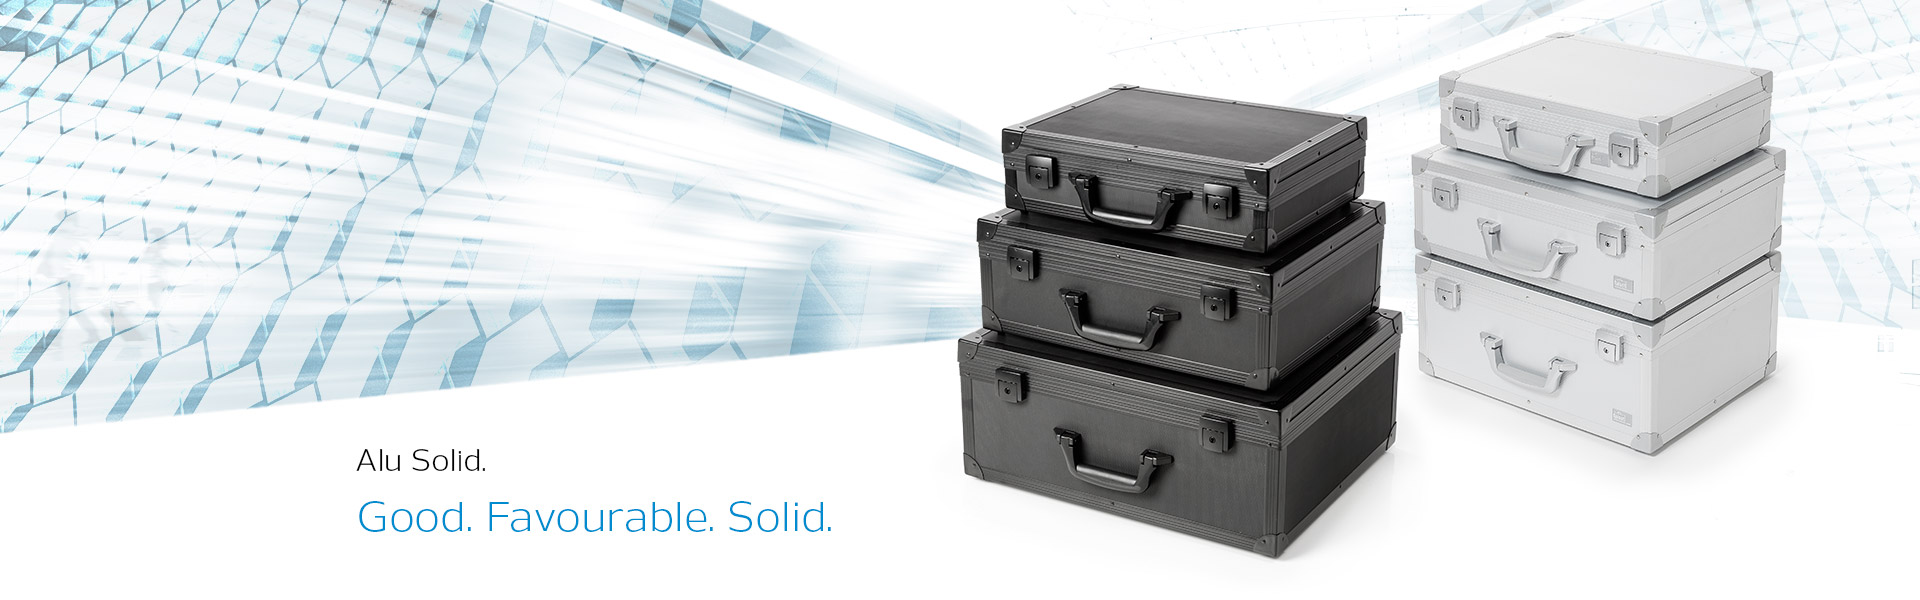 Aluminium cases from the Alu Solid case series